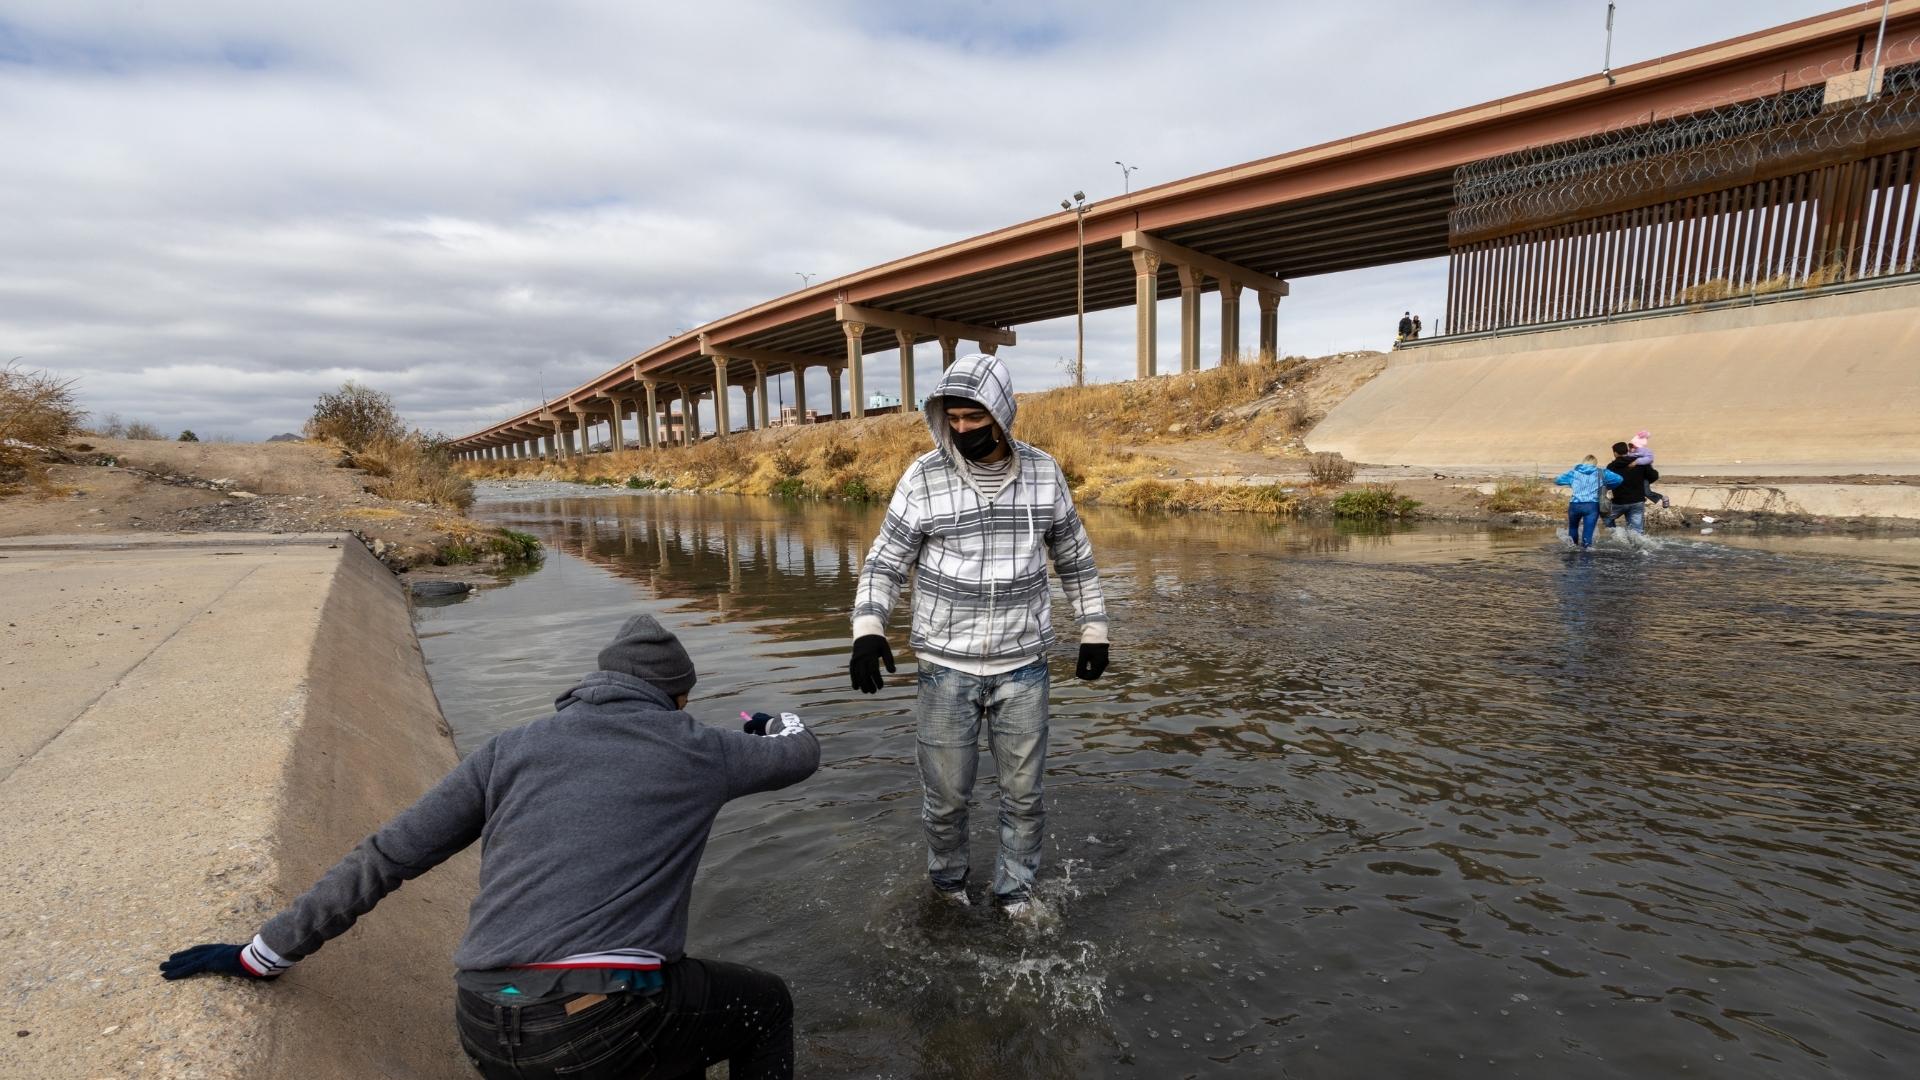 Imagen de referencia de migrantes cruzando el Río Bravo. Foto: Shutterstock